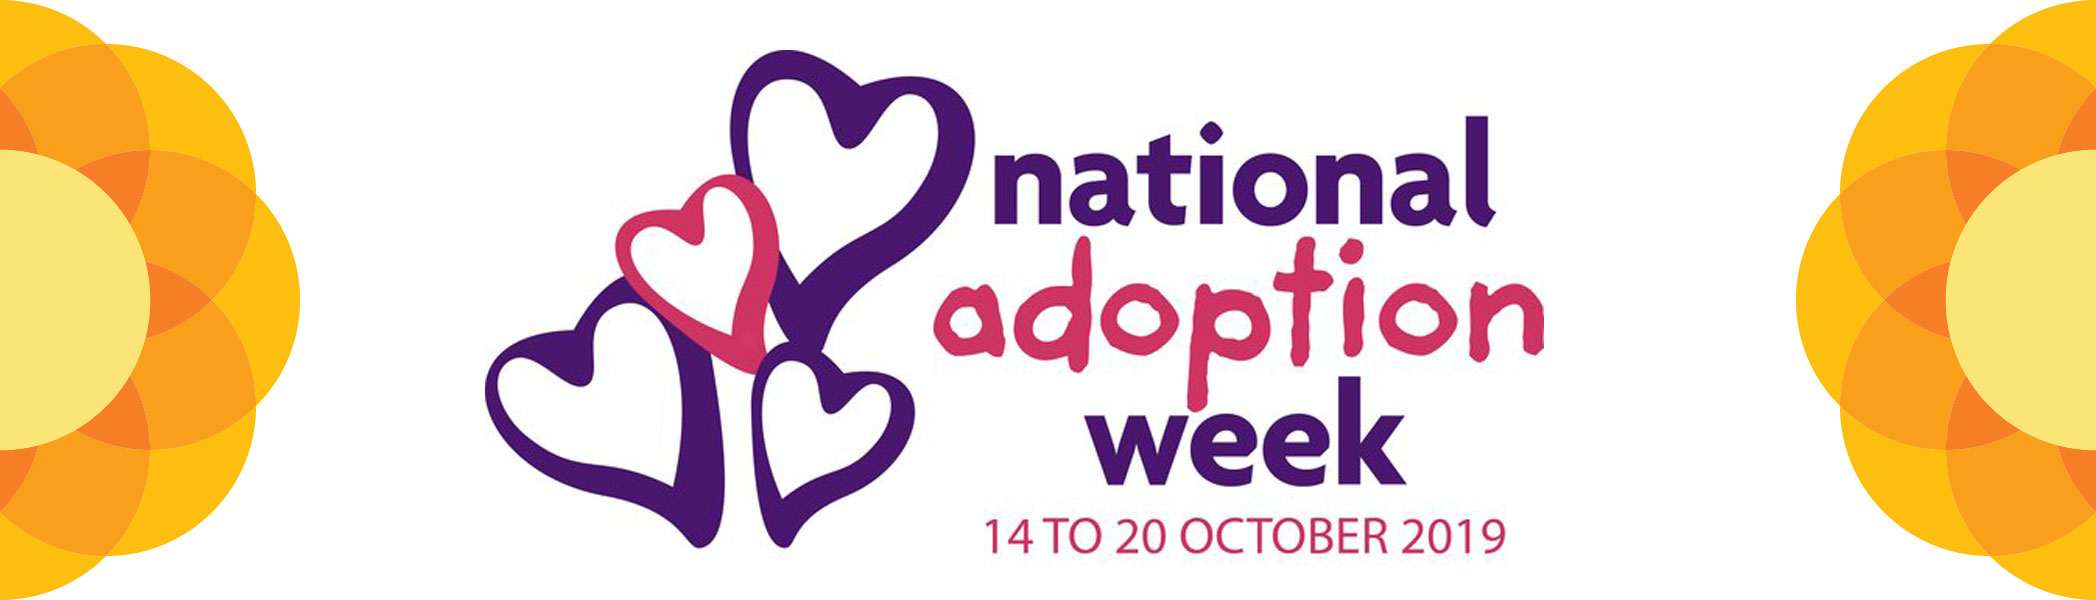 National Adoption Week 2019 Birmingham Children's Trust